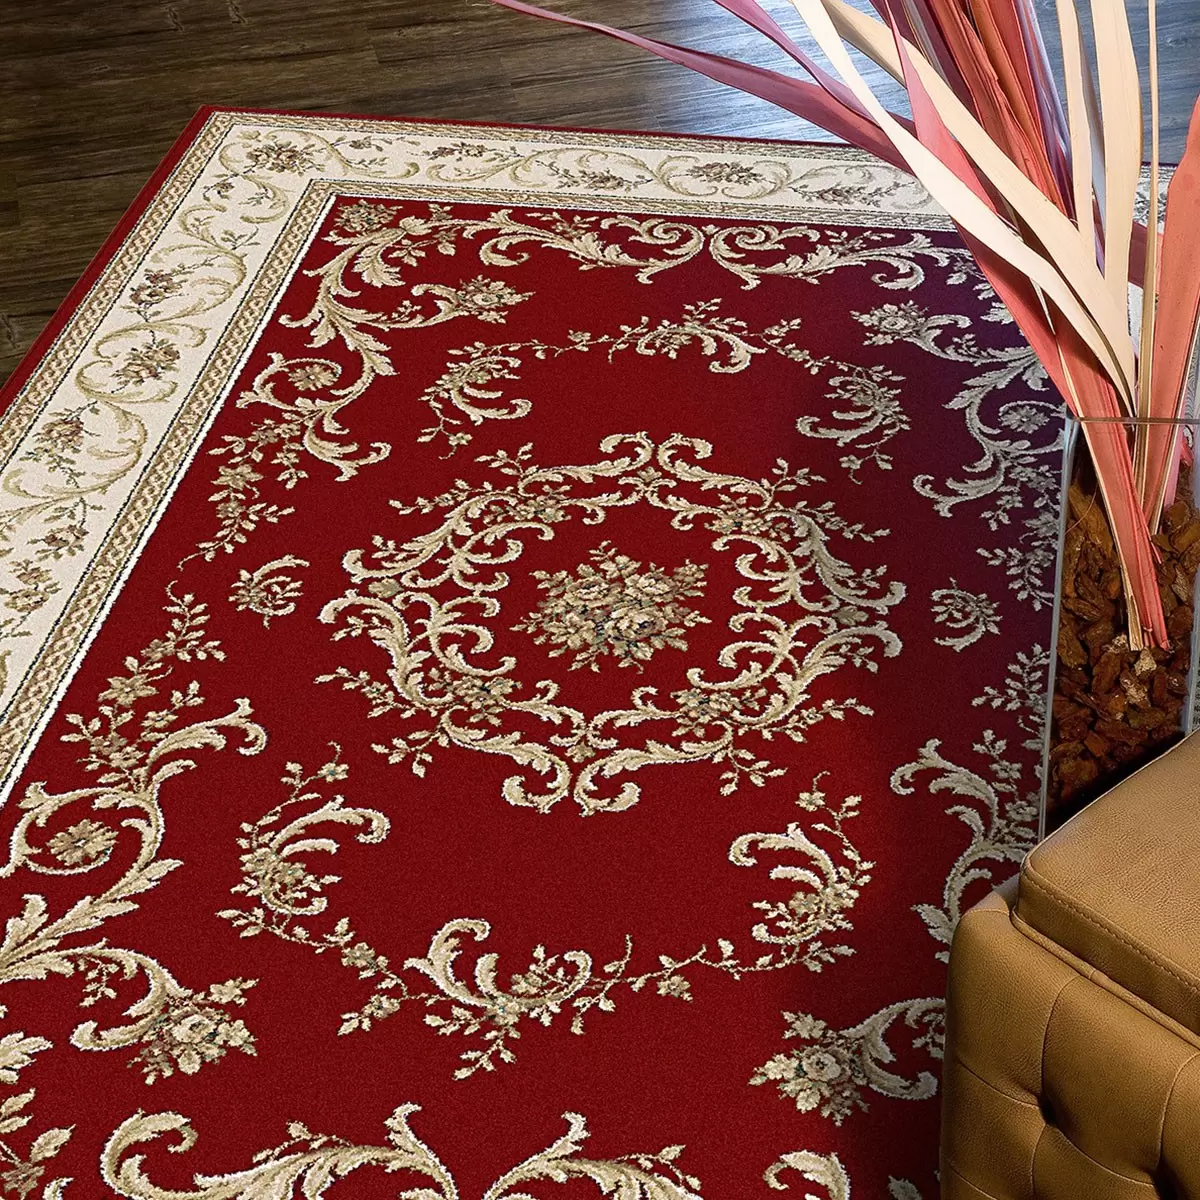 土耳其進口布爾薩皇室御用地毯 歐廷紅 160公分 X 230公分